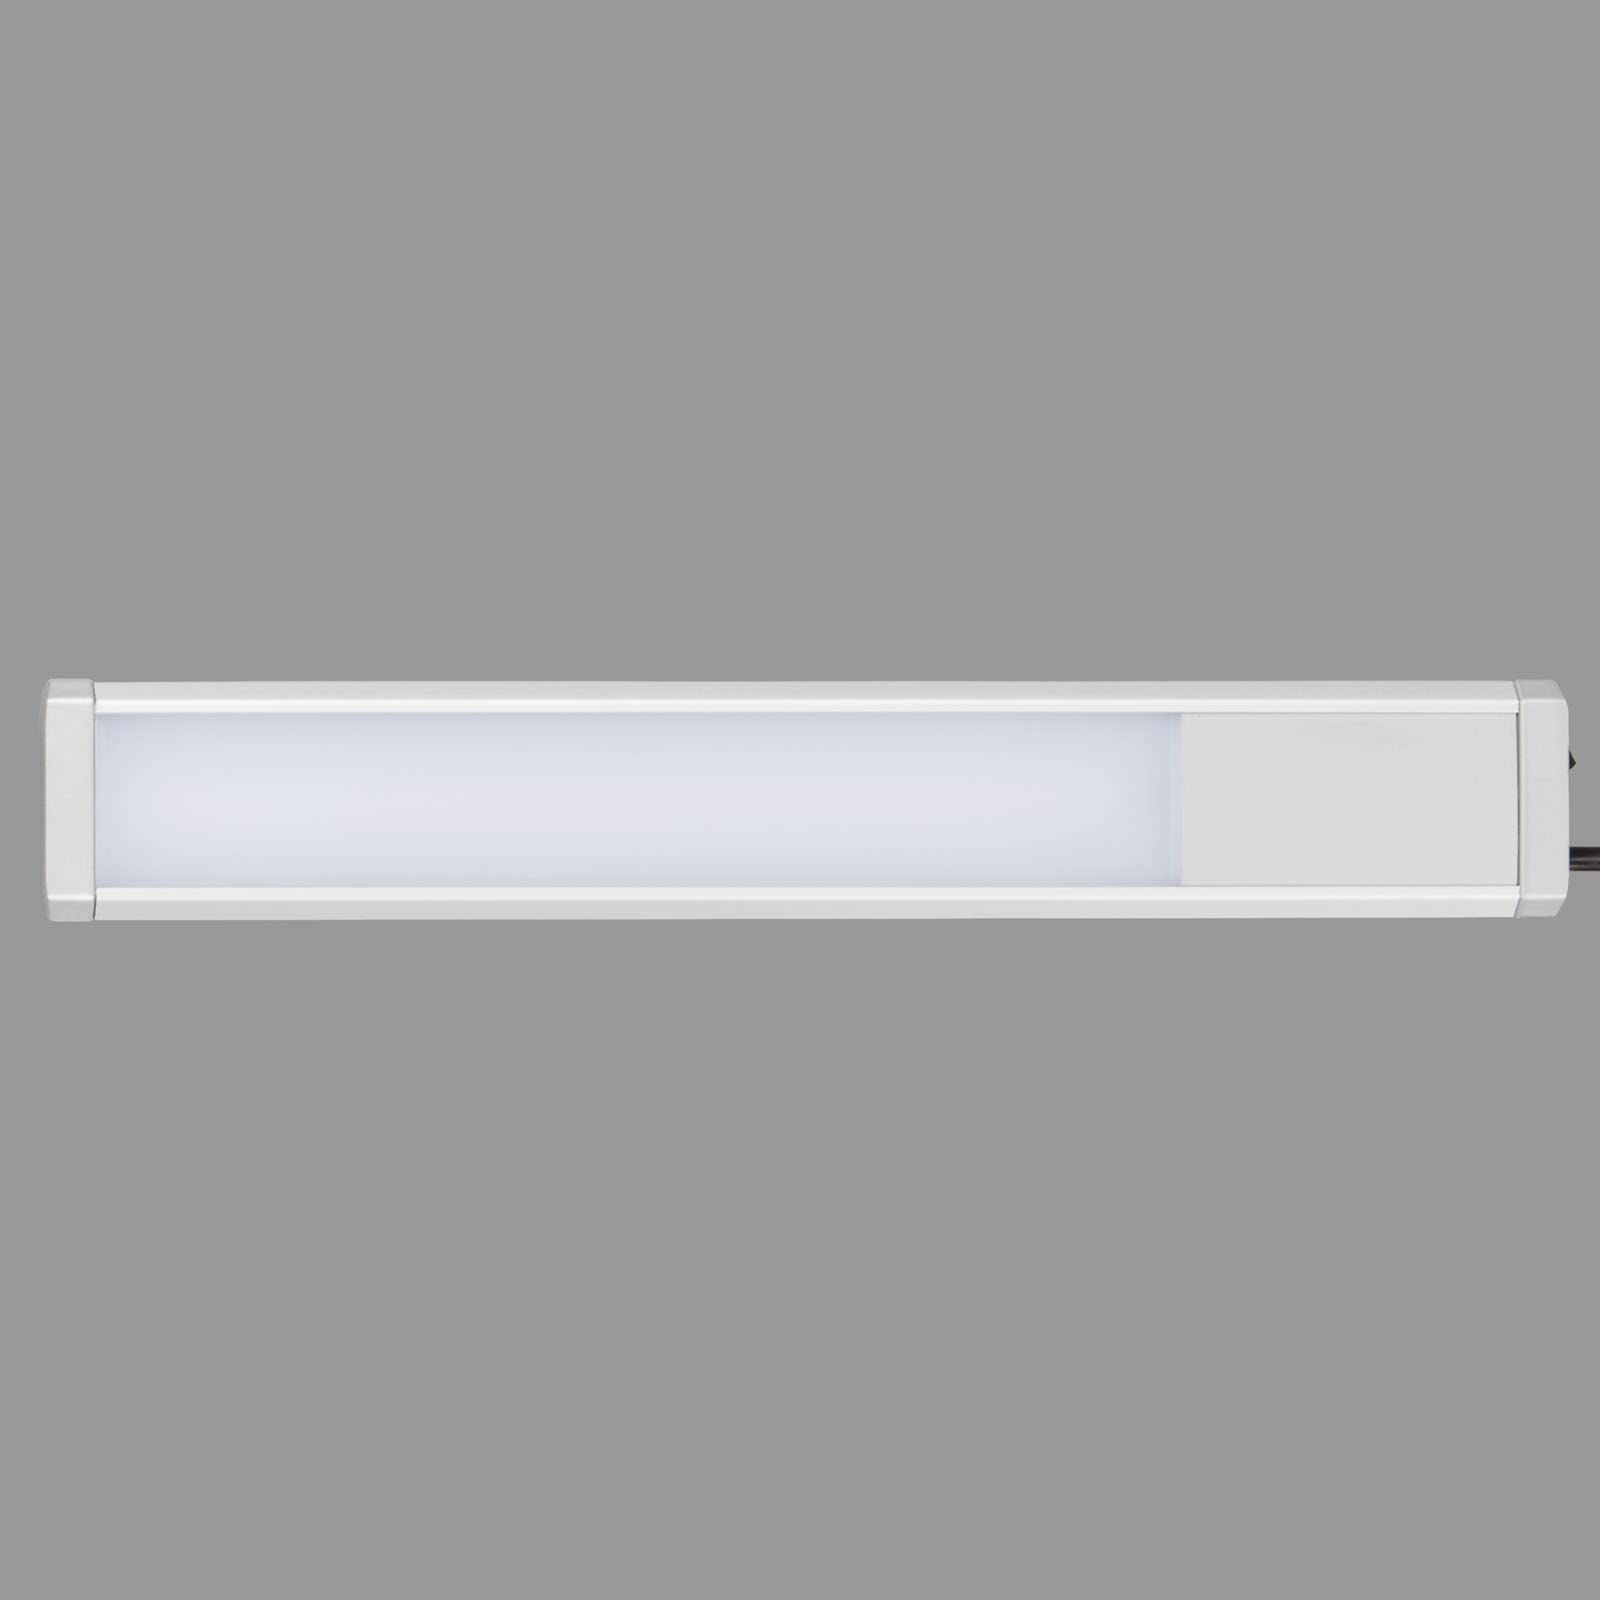 TELEFUNKEN - Led Unterbauleuchte 31,5 Cm, Küche, Led Leiste Küchenschrank, Werkstattlampe, Neutralweißes Licht, 4 W, 460 Lm, Silberfarbig